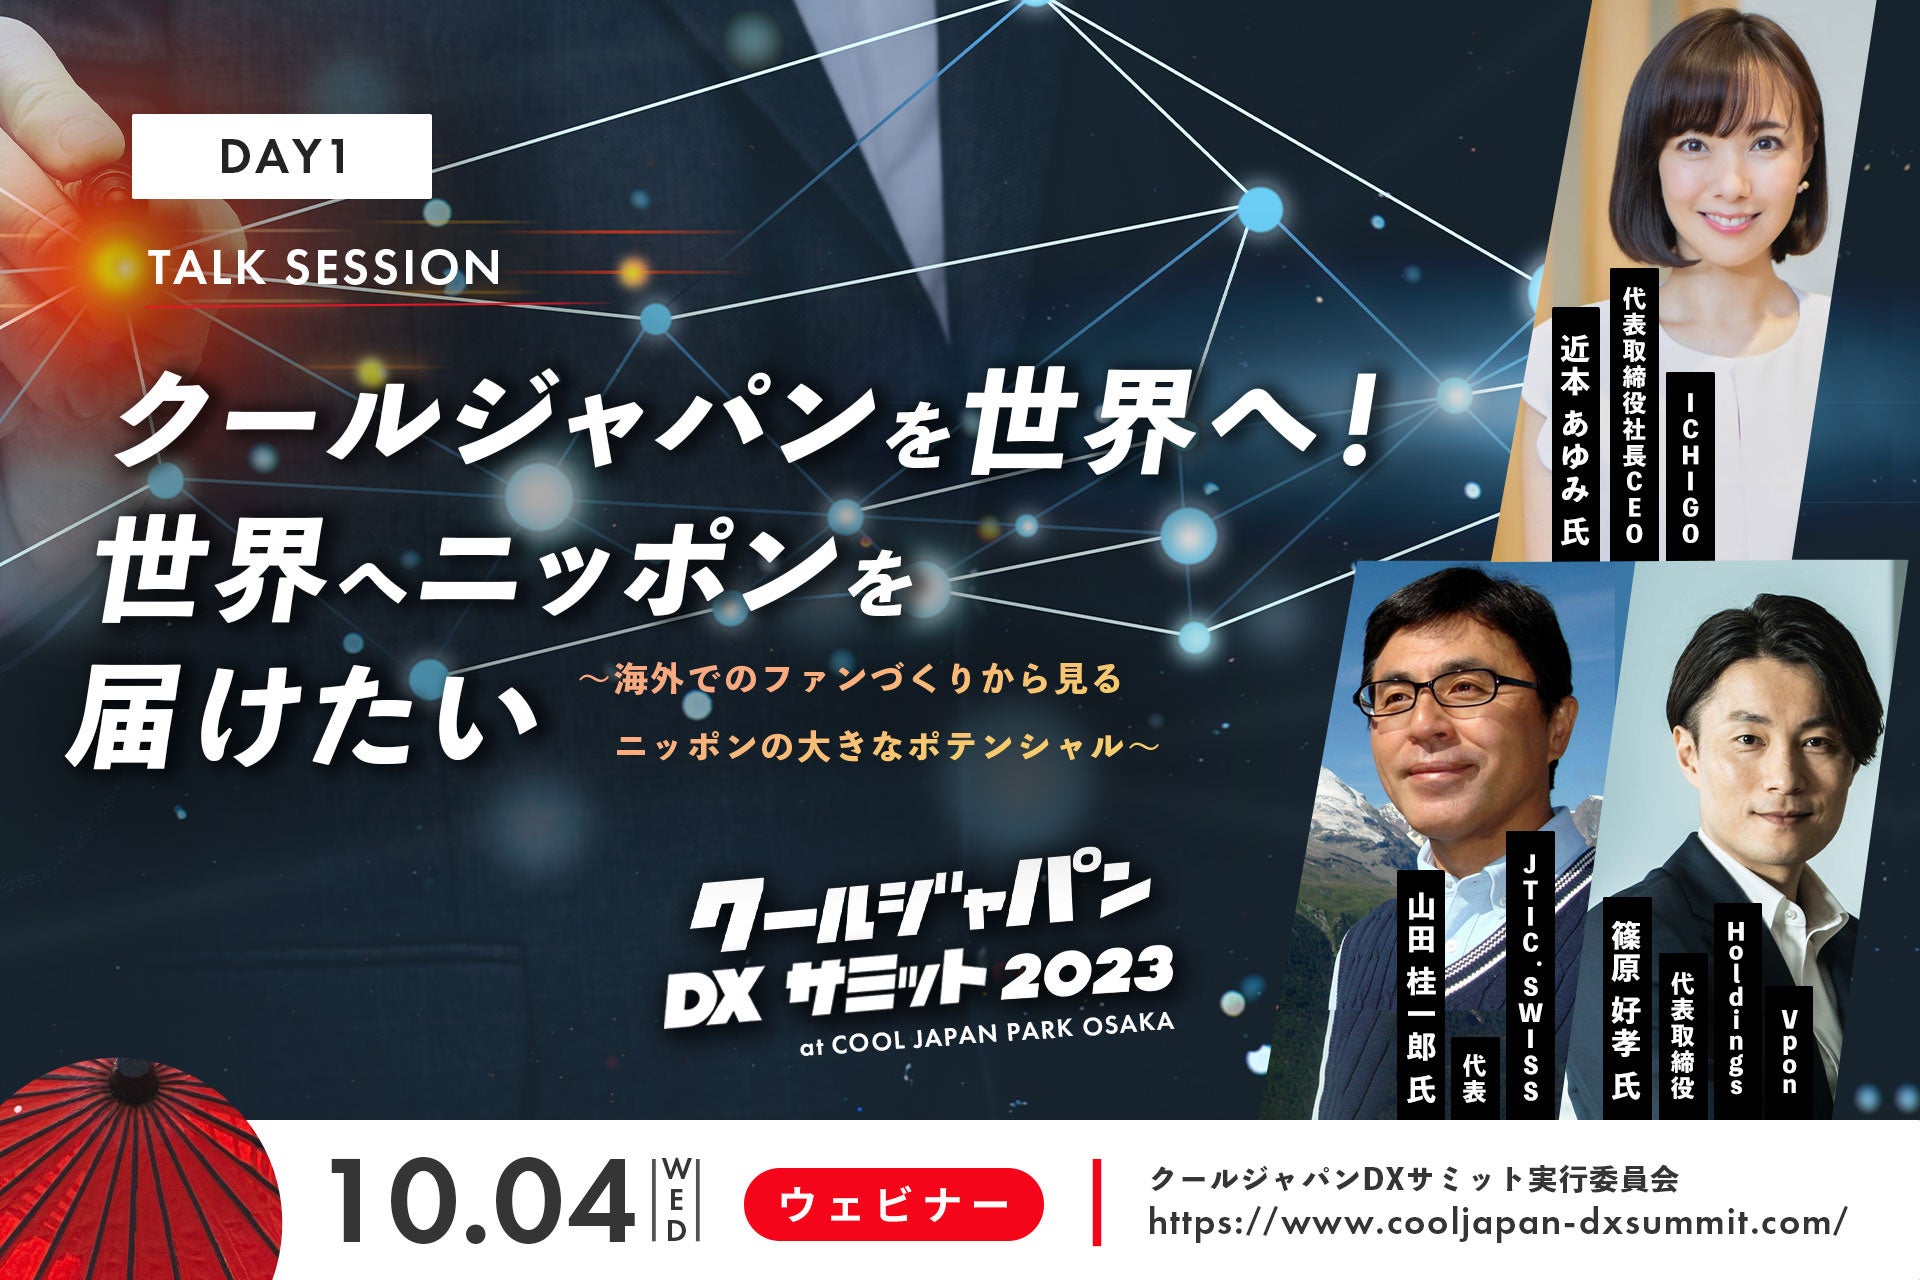 「クールジャパンDXサミット 2023」オンライン Day1 02 Talk Session 登壇者を発表！